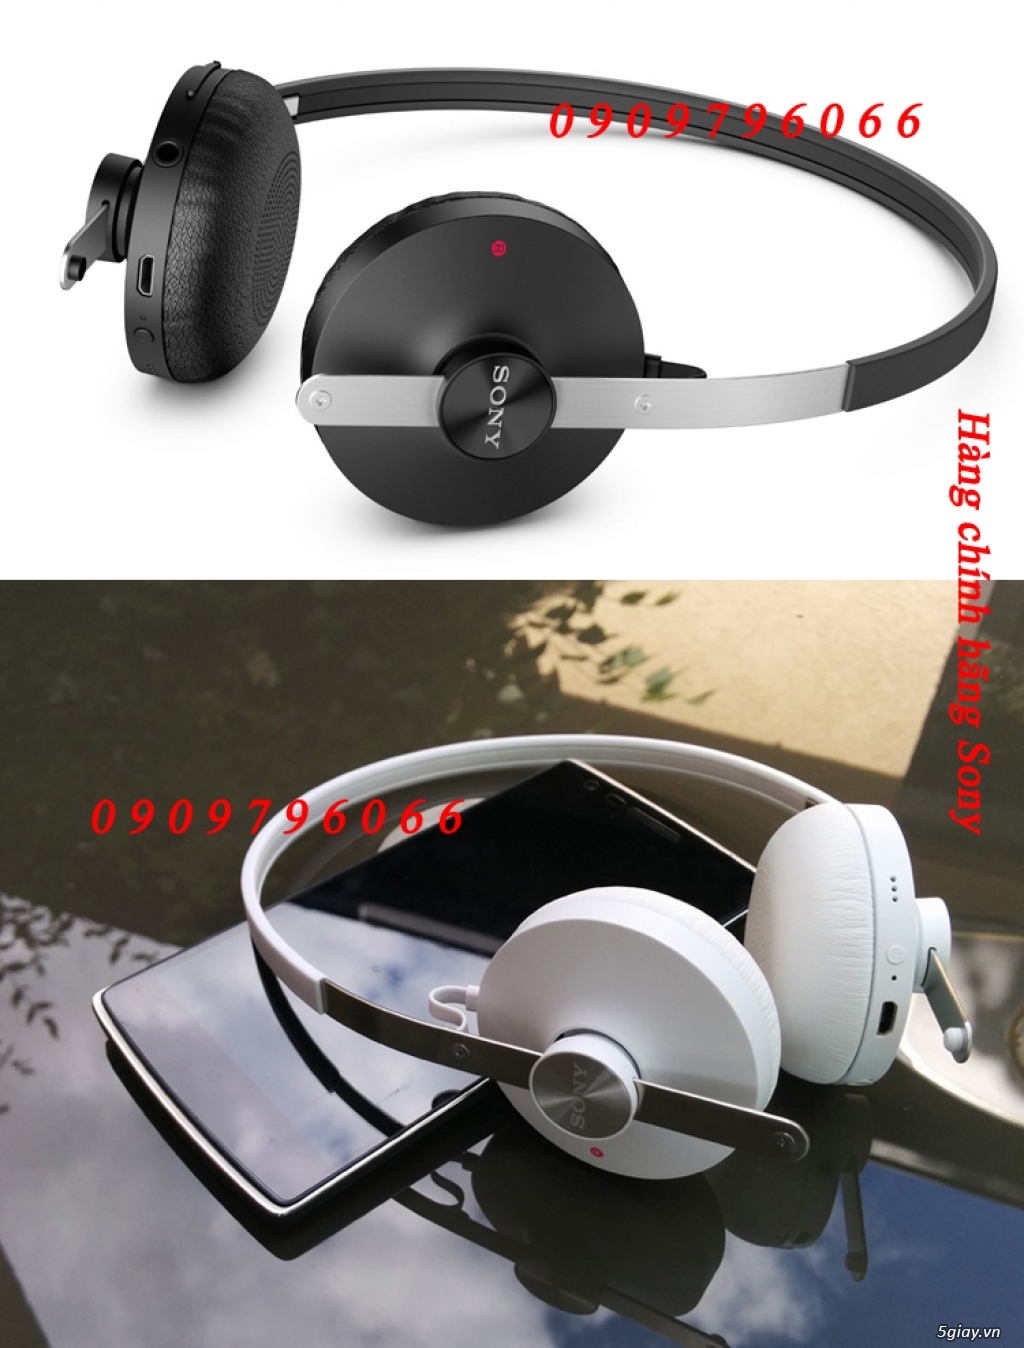 PKSTORE.VN >>> Tai nghe - Sạc - Cáp: HTC | APPLE | SamSung | Sony | LG| LUMIA| Beats...chính hãng<<< - 46